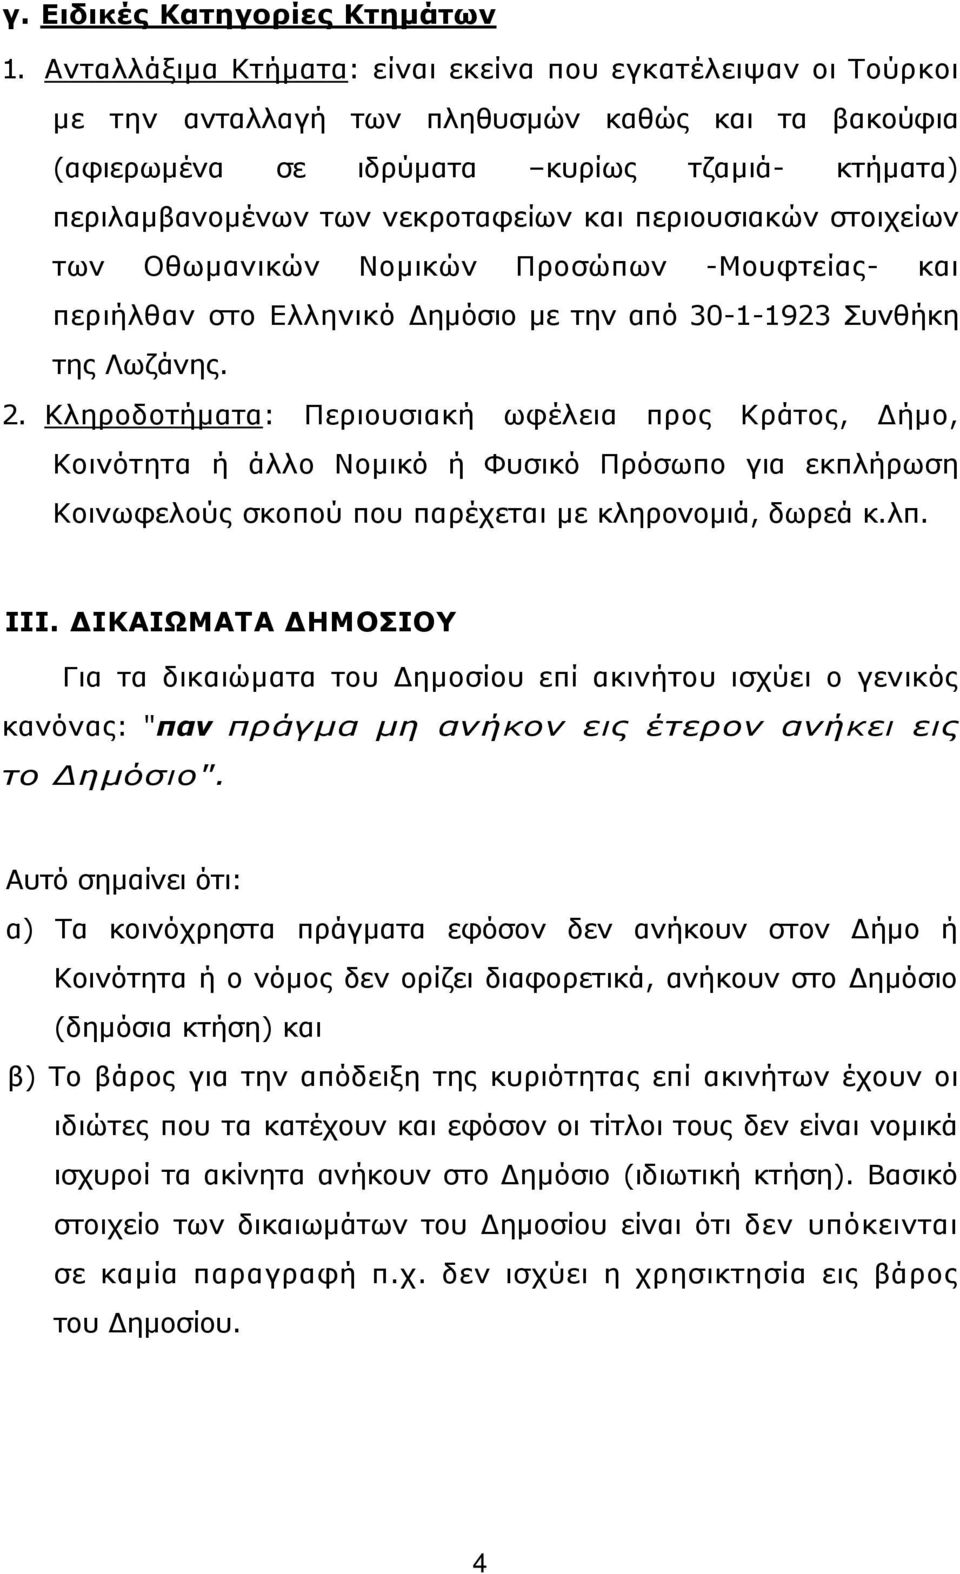 και περιουσιακών στοιχείων των Οθωµανικών Νοµικών Προσώπων -Μουφτείας- και περιήλθαν στο Ελληνικό ηµόσιο µε την από 30-1-1923 Συνθήκη της Λωζάνης. 2.